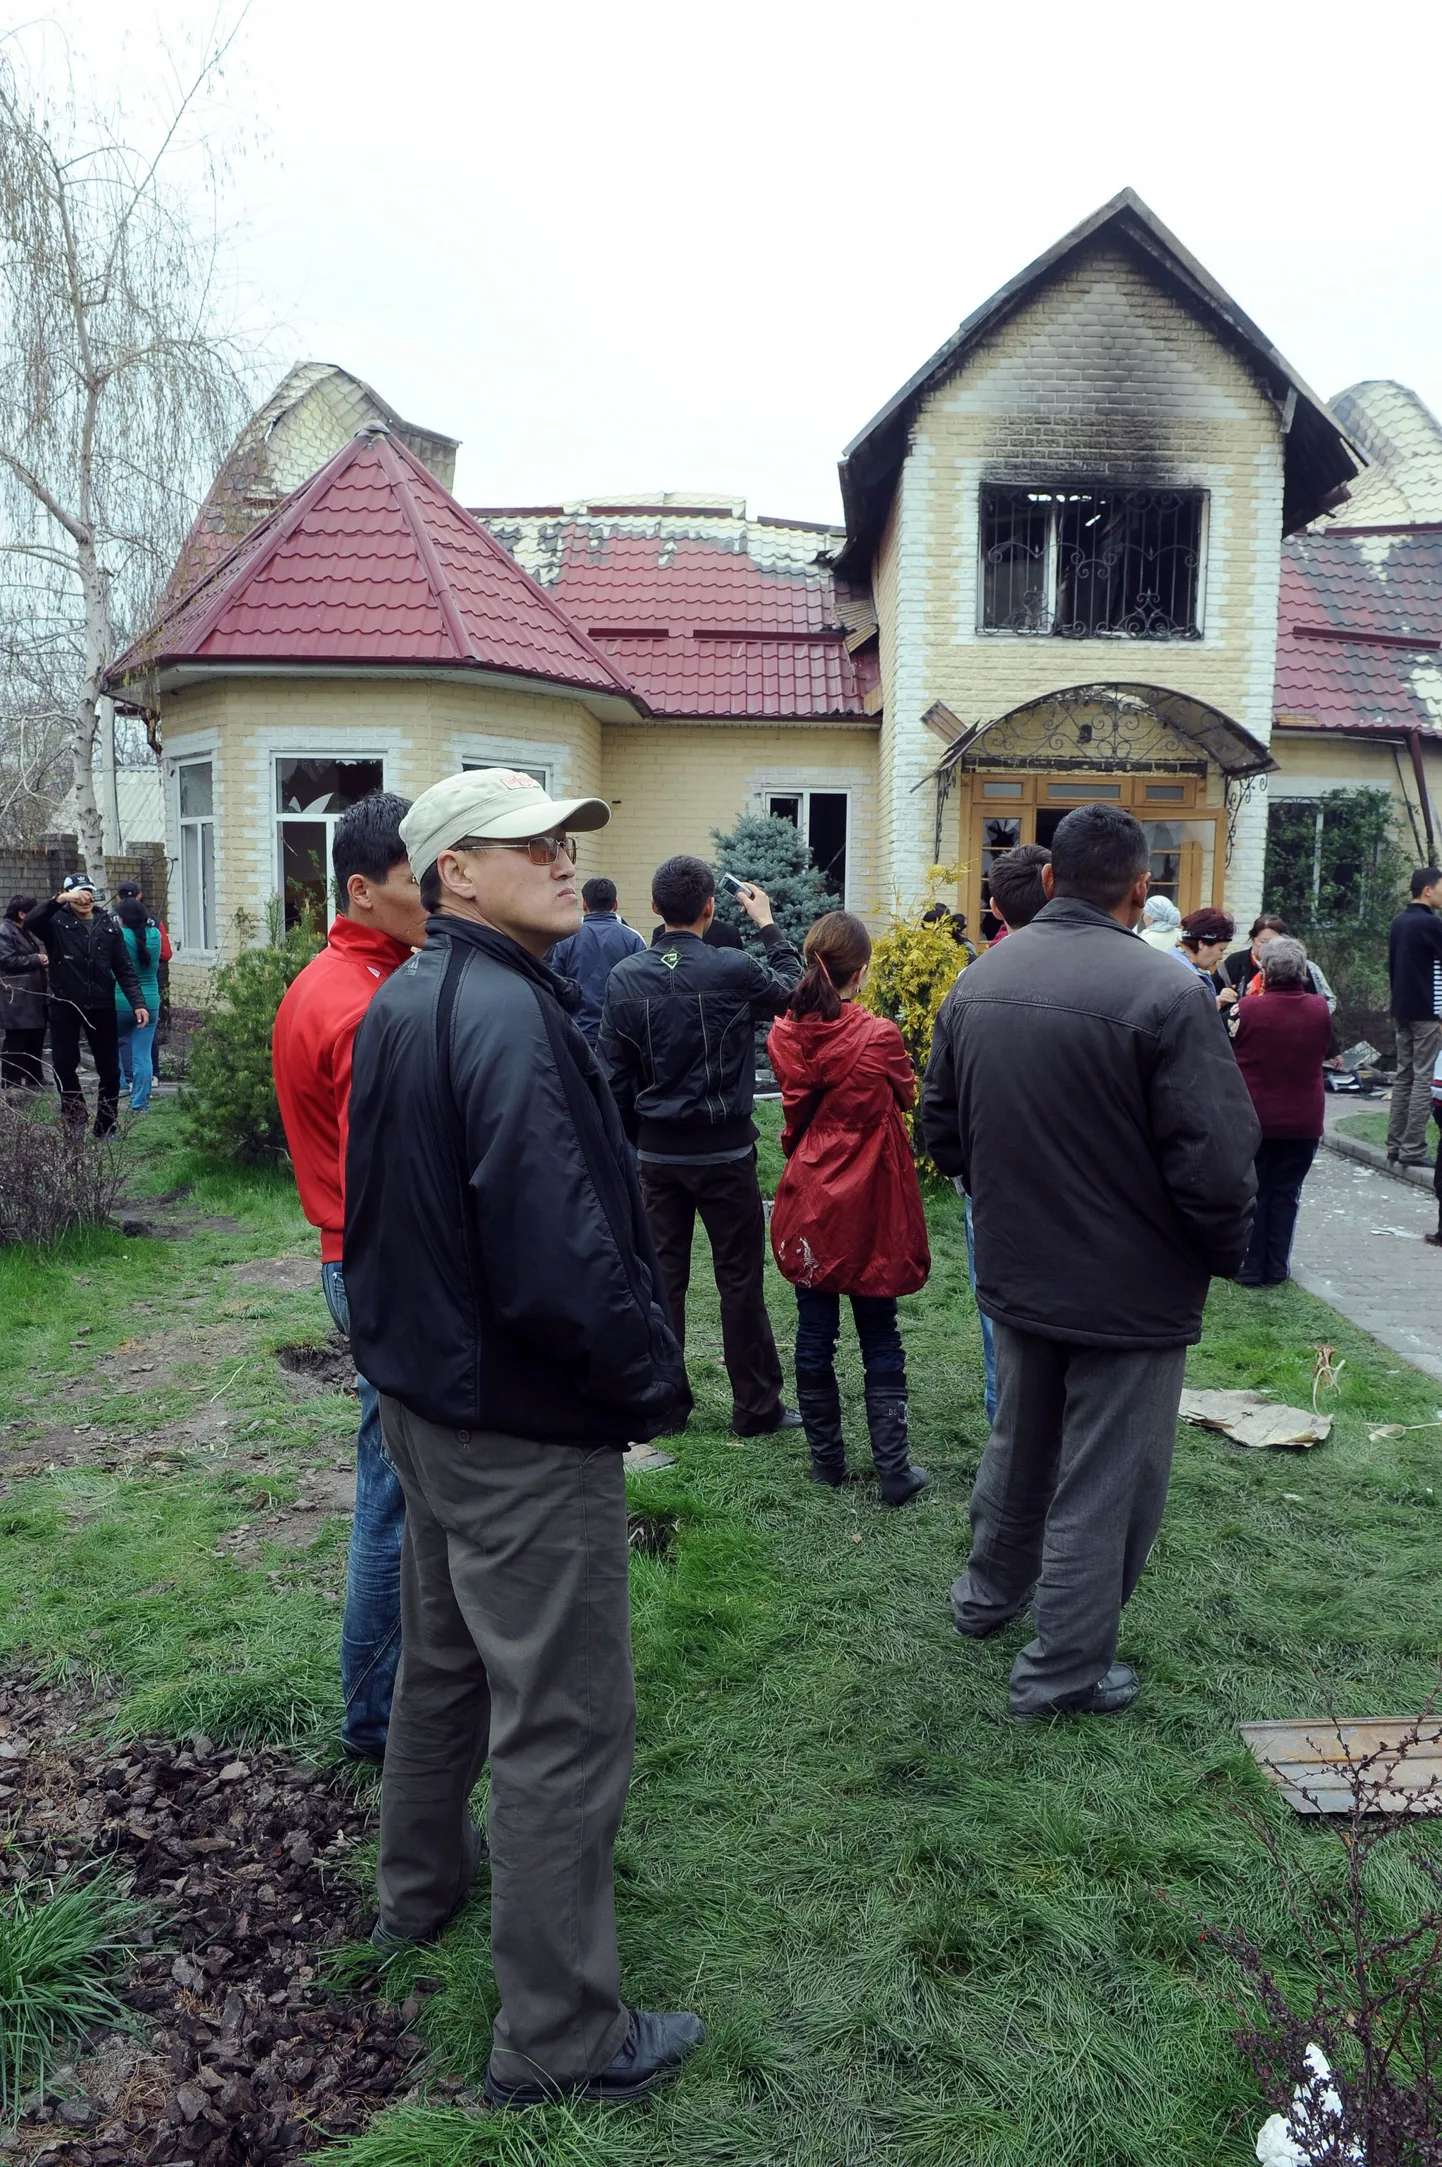 Kirgiisid rüüstatud eramu juures Biškekis, kus varem elas president Kurmanbek Bakijev.